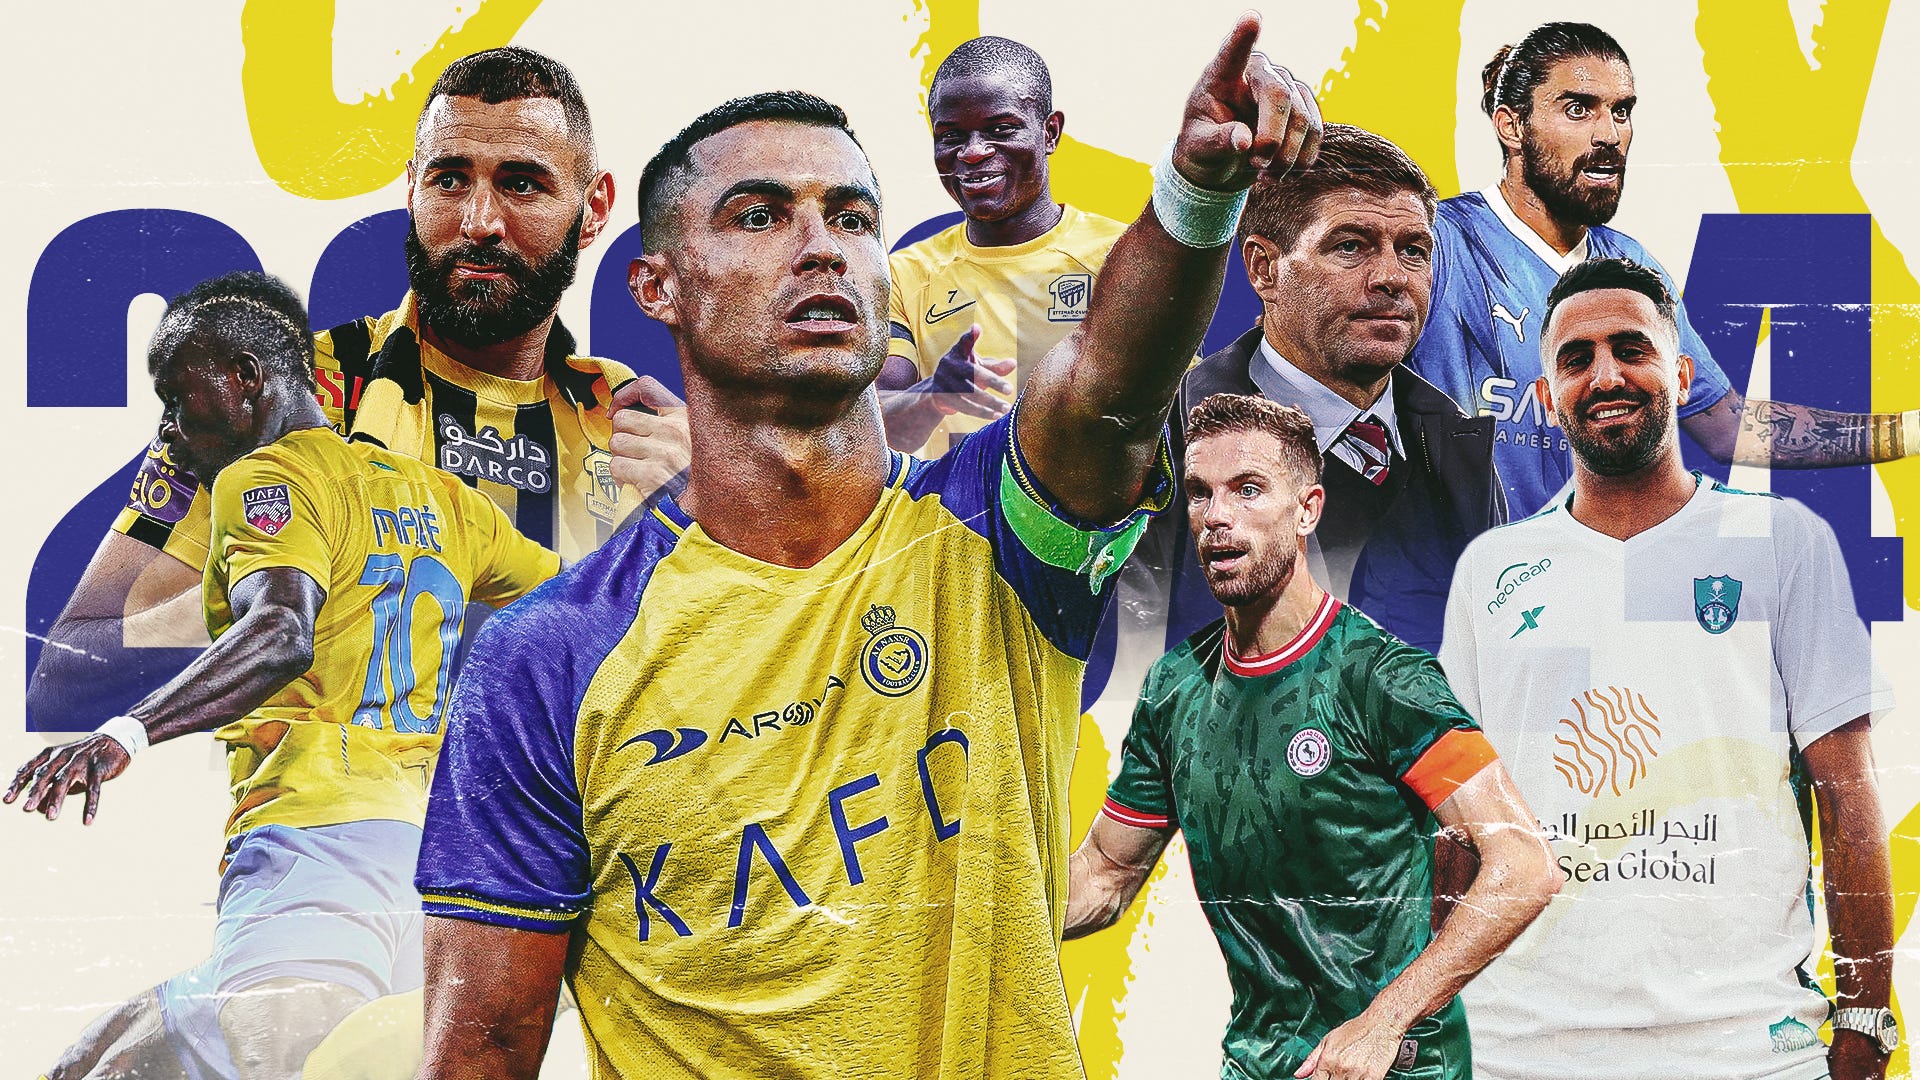 Saudi Pro League im LIVE-STREAM und TV Wer zeigt / überträgt die Spiele von Cristiano Ronaldo, Karim Benzema, Neymar und Co